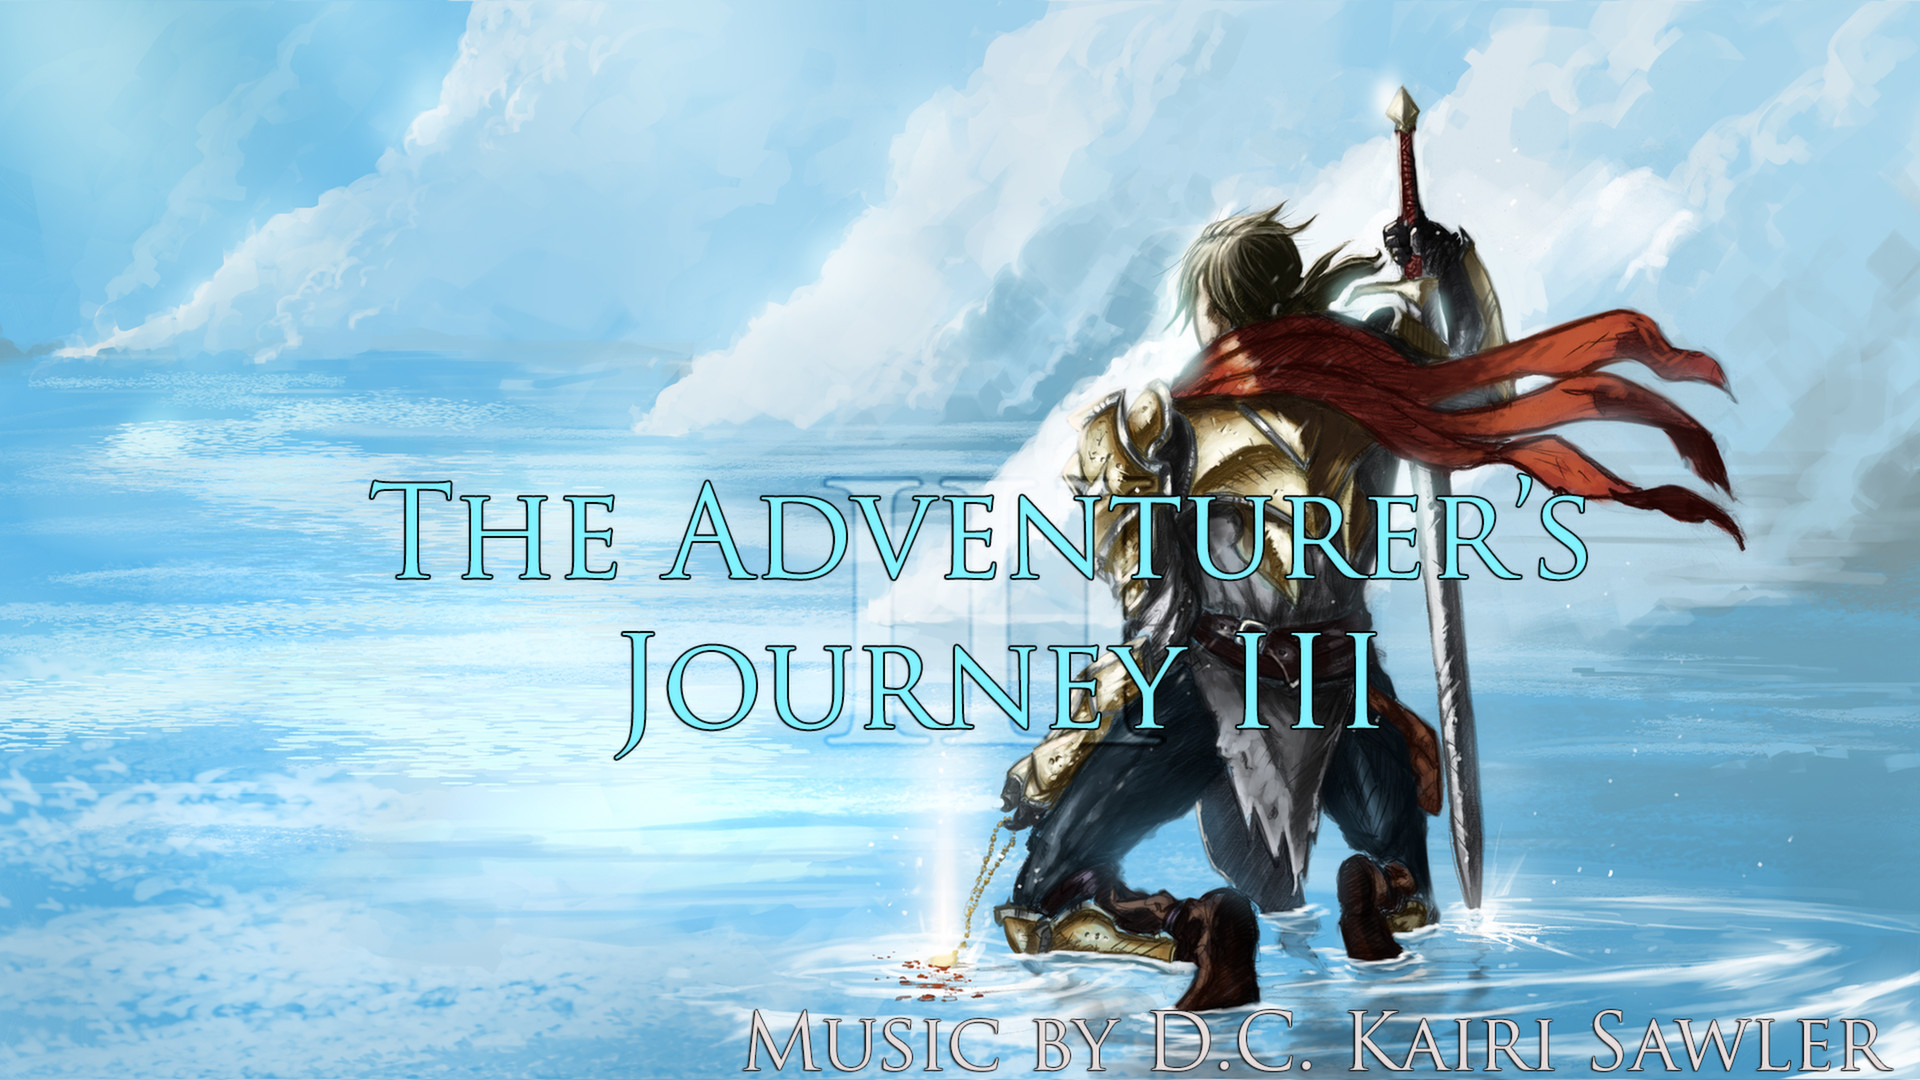 RPG Maker VX Ace - The Adventurer's Journey III DLC Steam CD Key 4.51 usd